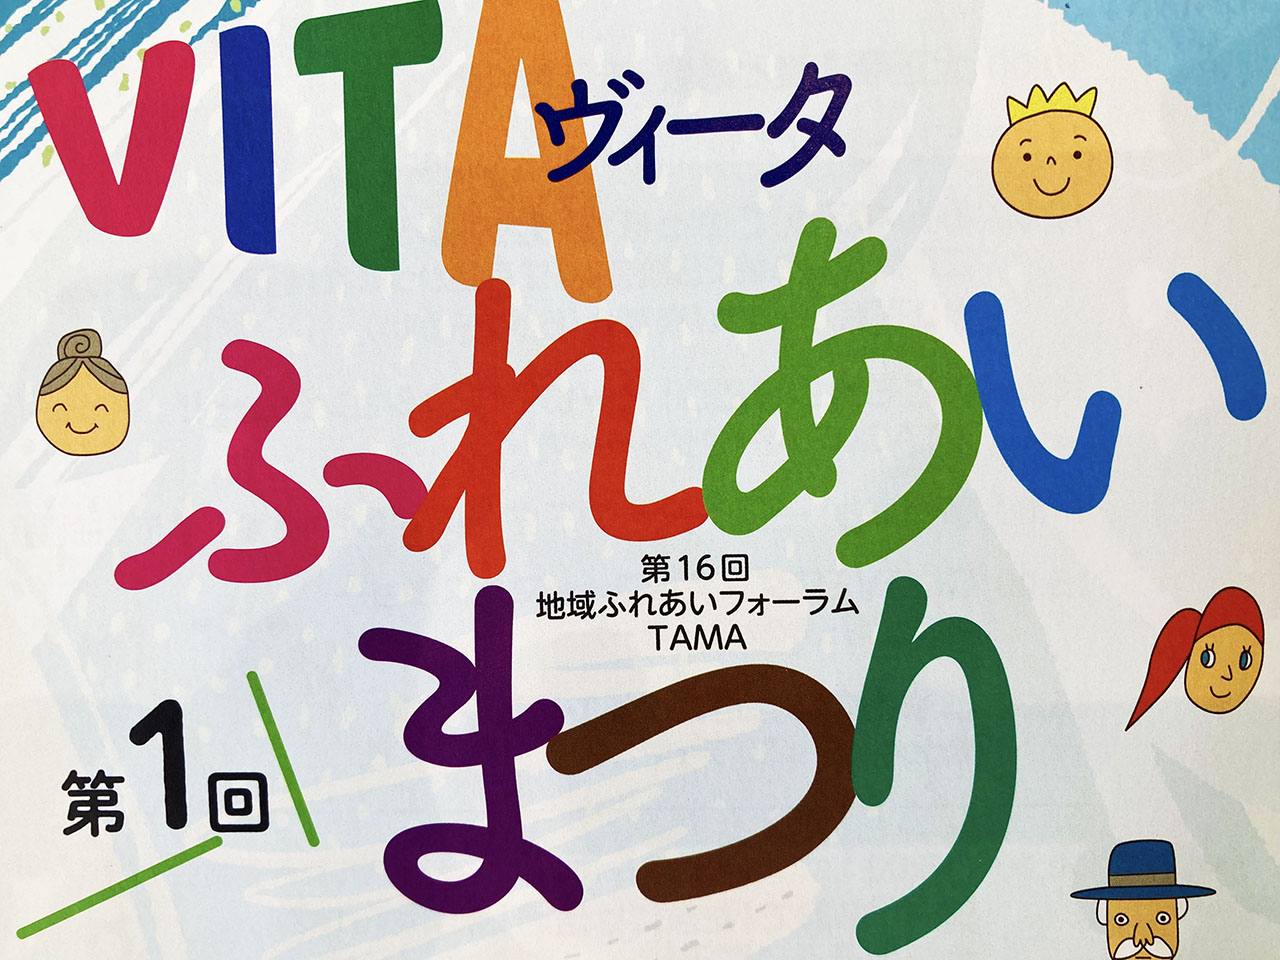 夏休み！見て遊んで体験して♪「第1回VITA(ヴィータ)ふれあい祭り」8/7に関戸公民館で開催！